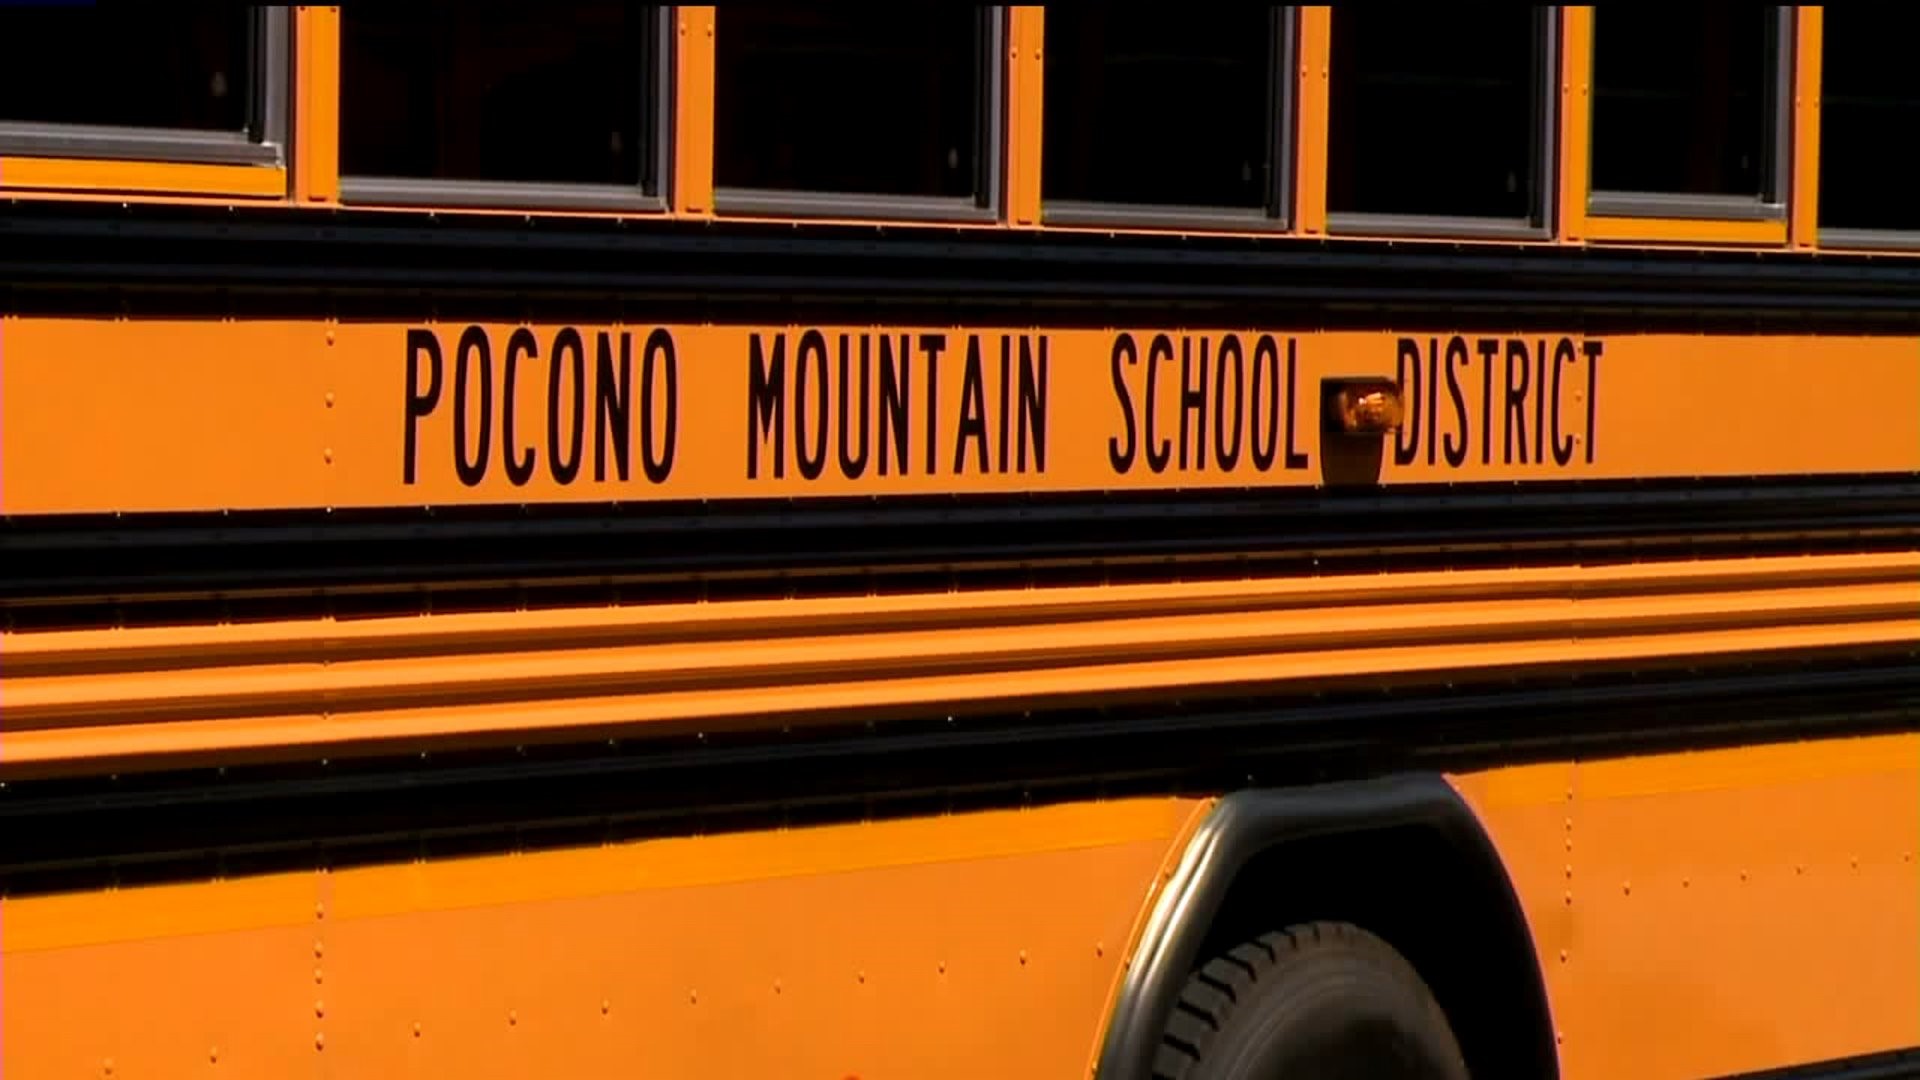 Pocono Mountain Votes to Outsource Transportation Services